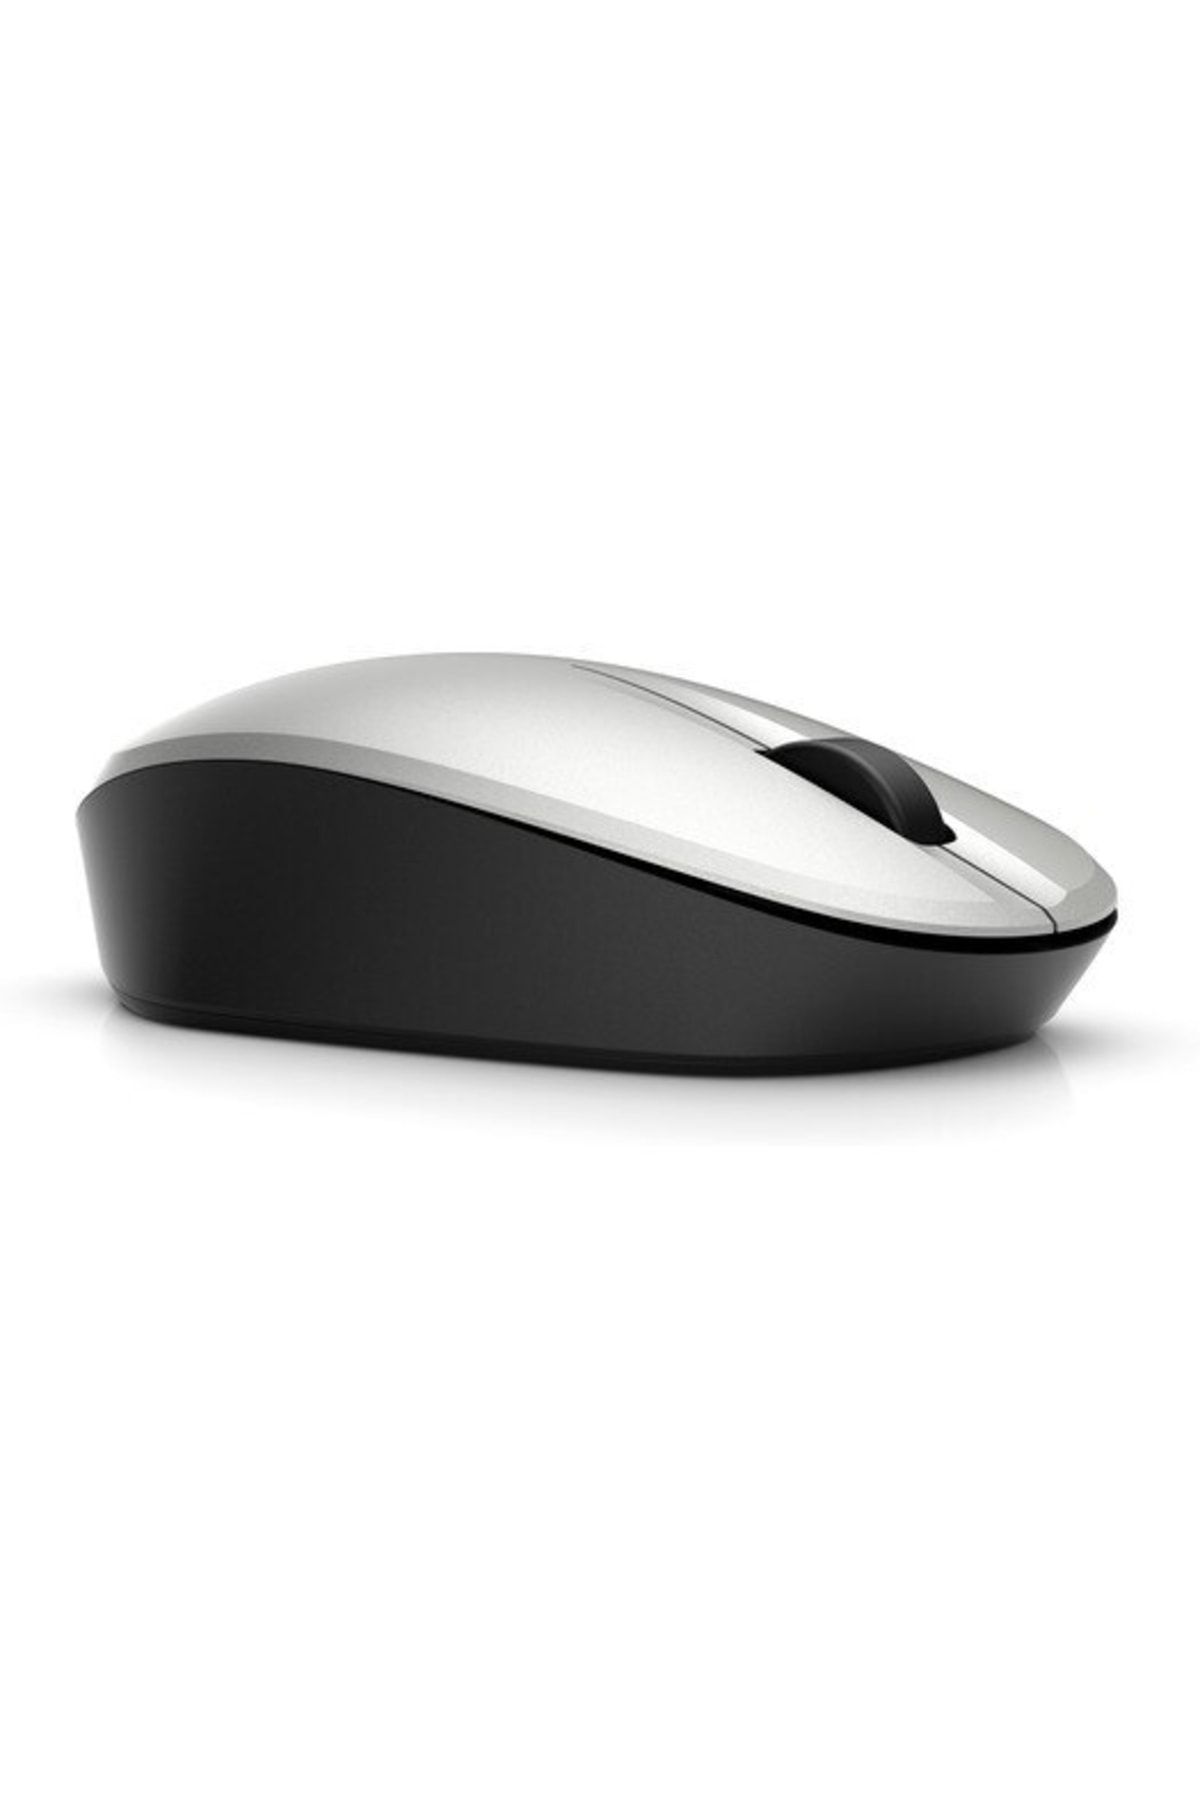 HP 6cr72aa Dual Mode Mouse - Gümüş